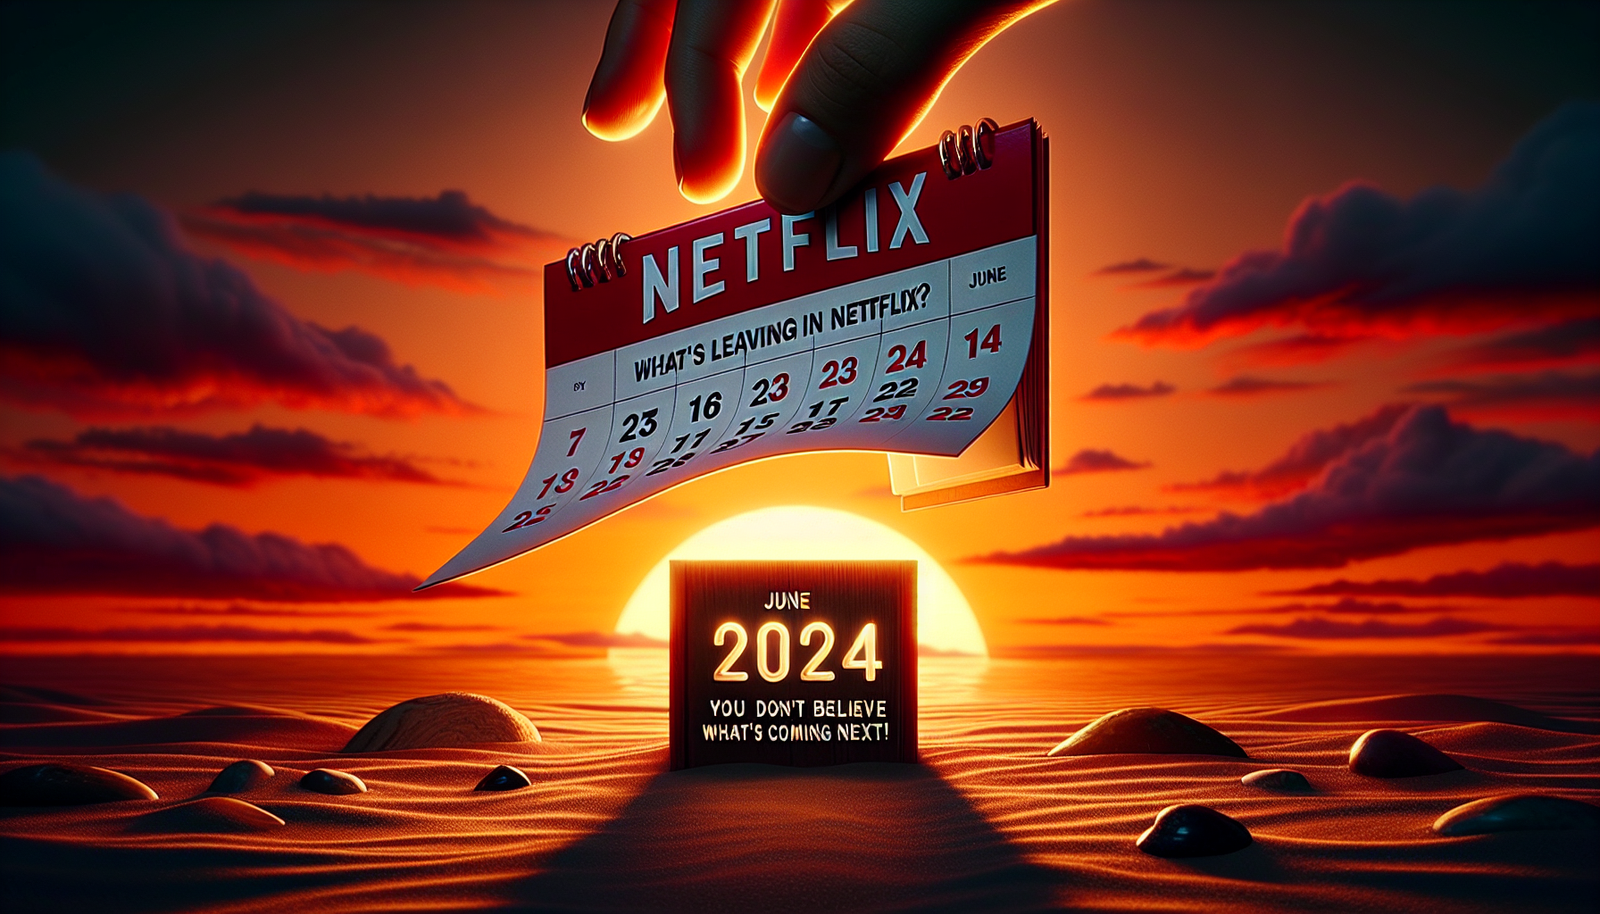 ¡Descubre lo que dejará Netflix en junio de 2024 y prepárate para sorprenderte con lo que viene a continuación! ¡No te pierdas los emocionantes cambios que se avecinan!